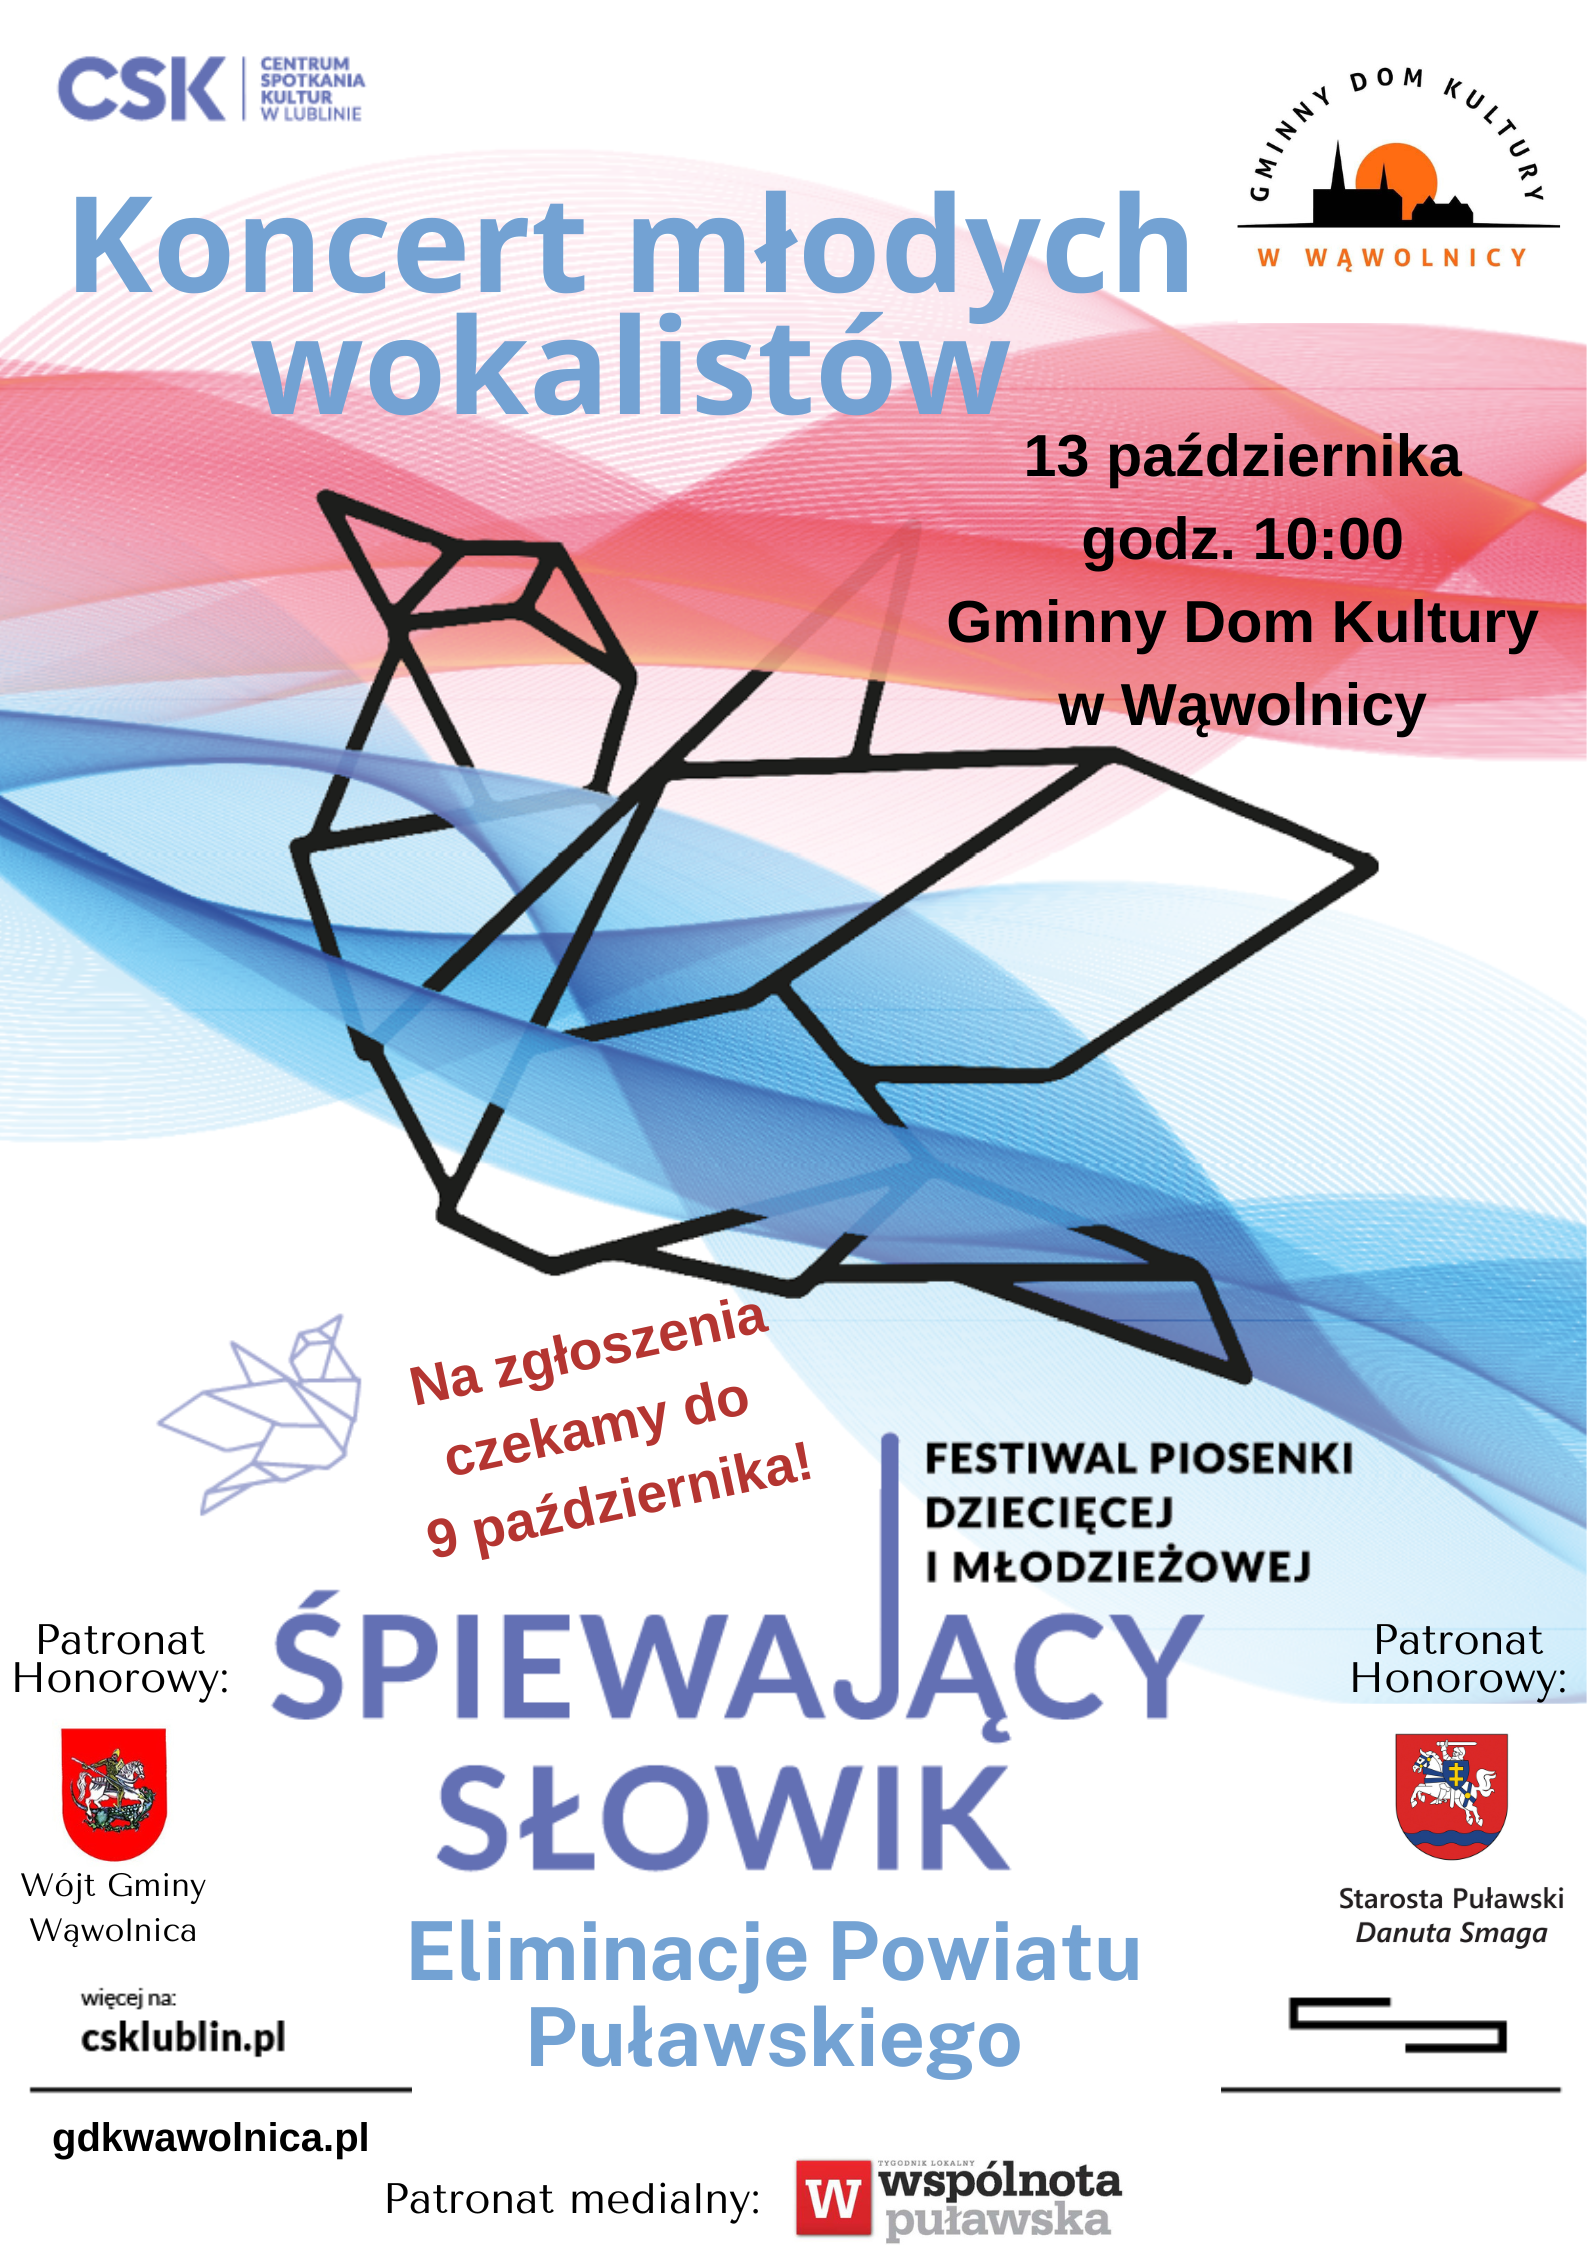 Plakat koncertu młodych talentów CSKI z wzorem origami, informacjami o wydarzeniu, współorganizatorach i sponsorach.